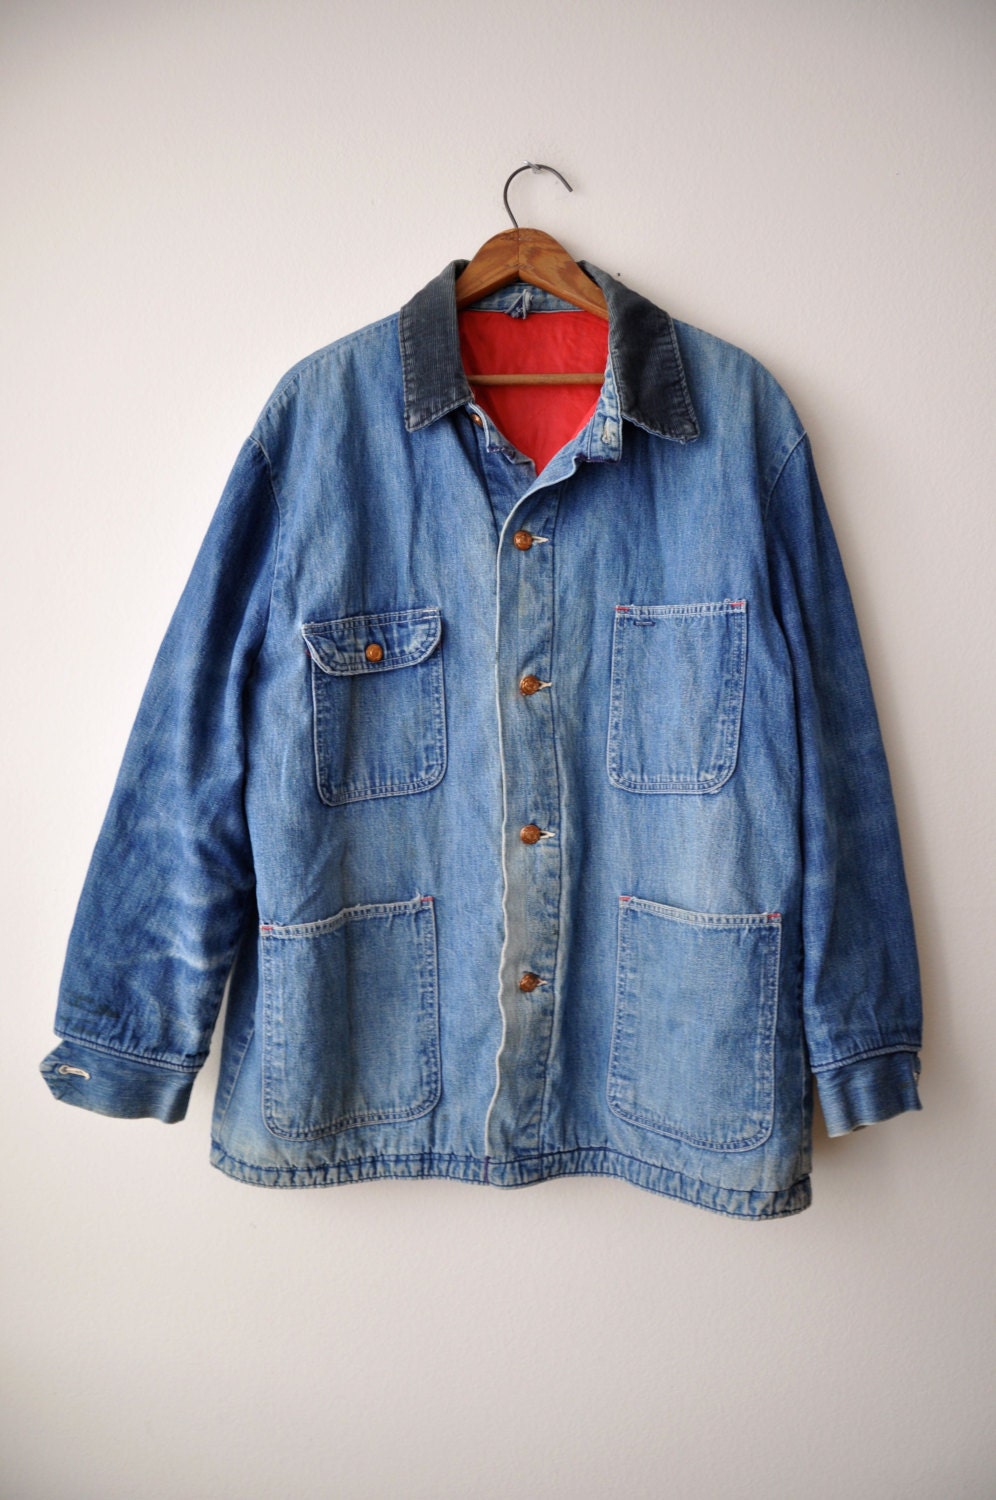 Vintage 1940s Men's Denim Jacket Work Wear 46 Inch Chest